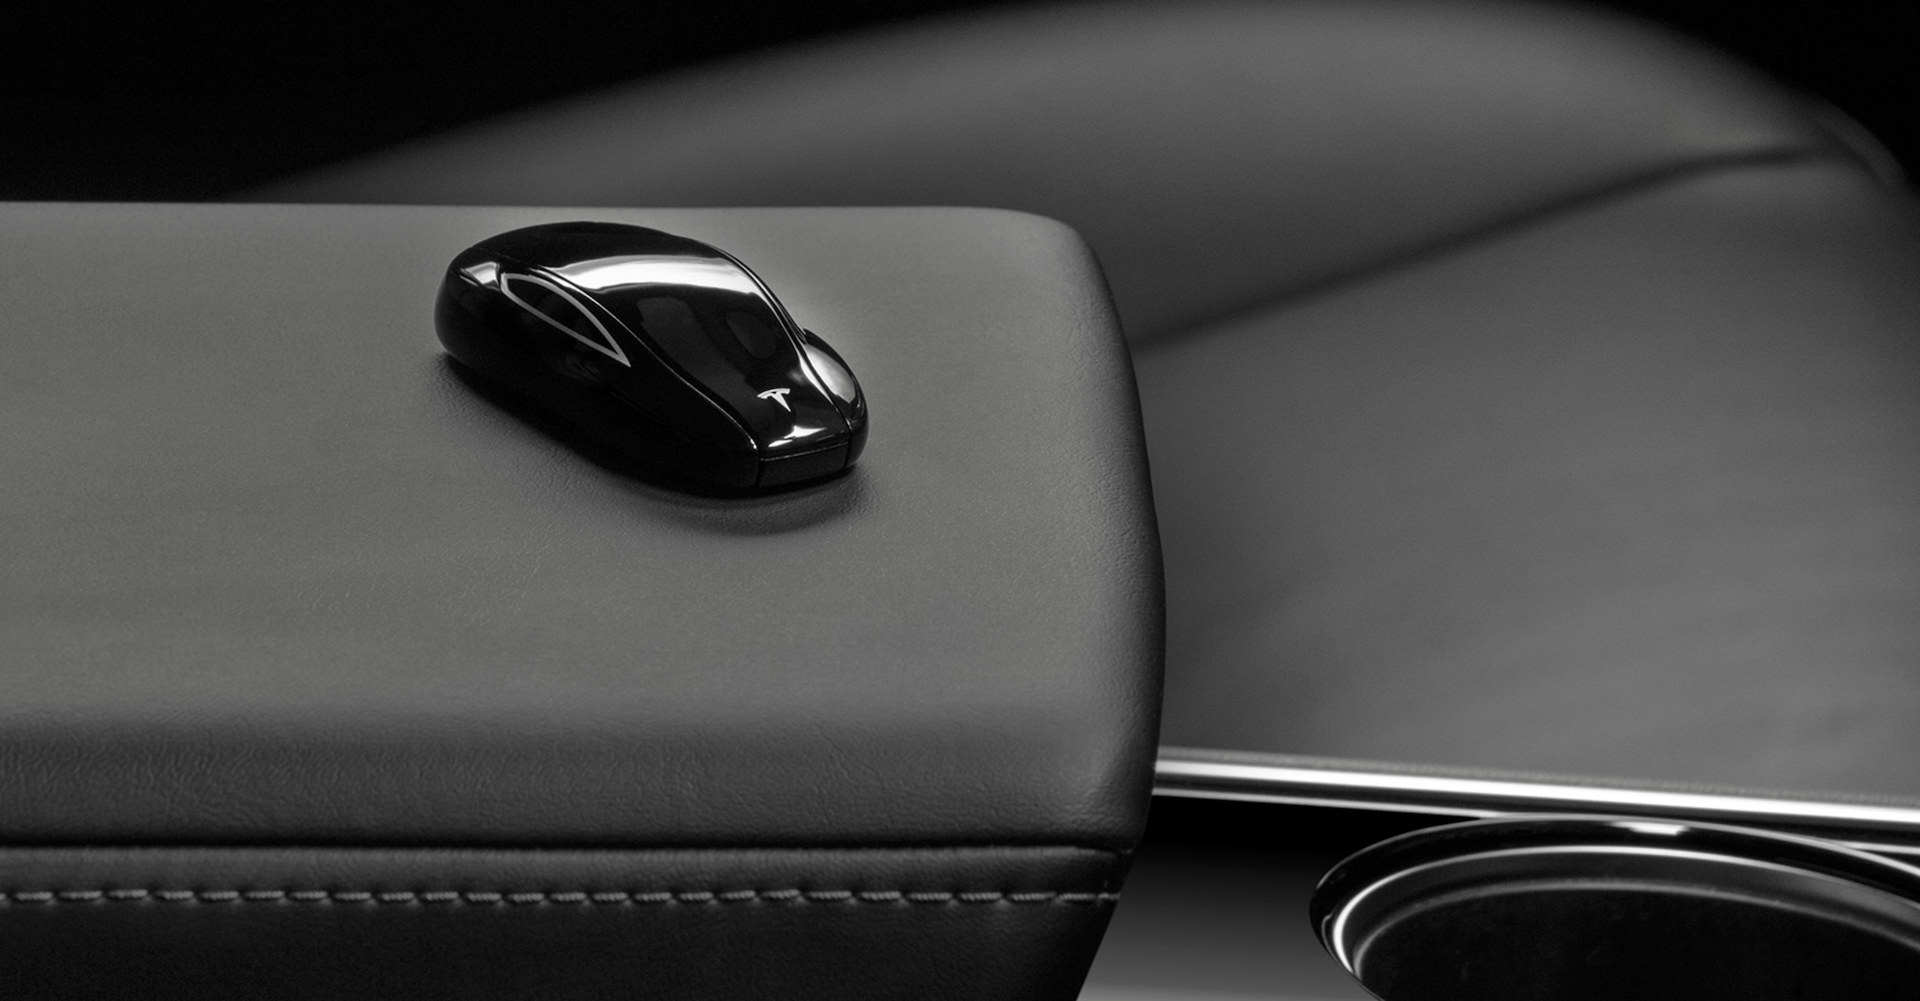 Auto clés Pour TESLA Model S 3 Logo cristal CLÉ LED Badge clés